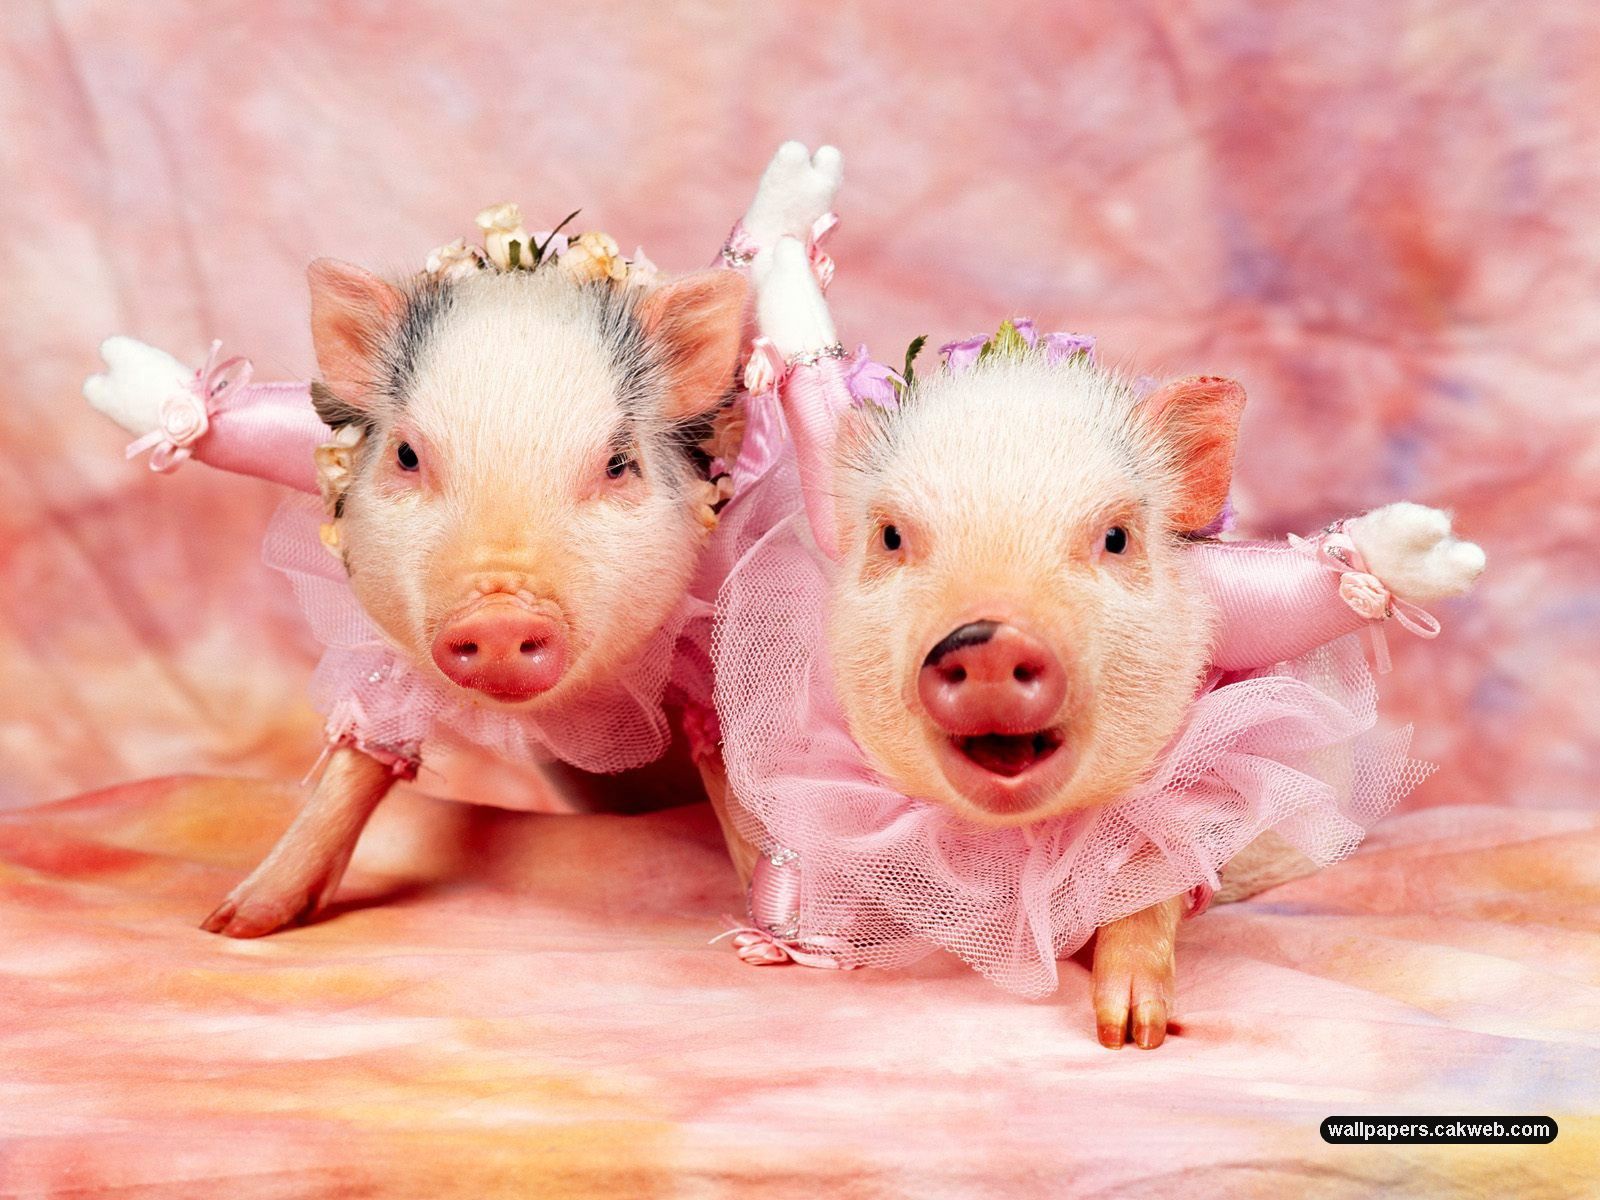 Adorable Pigs In Tutus